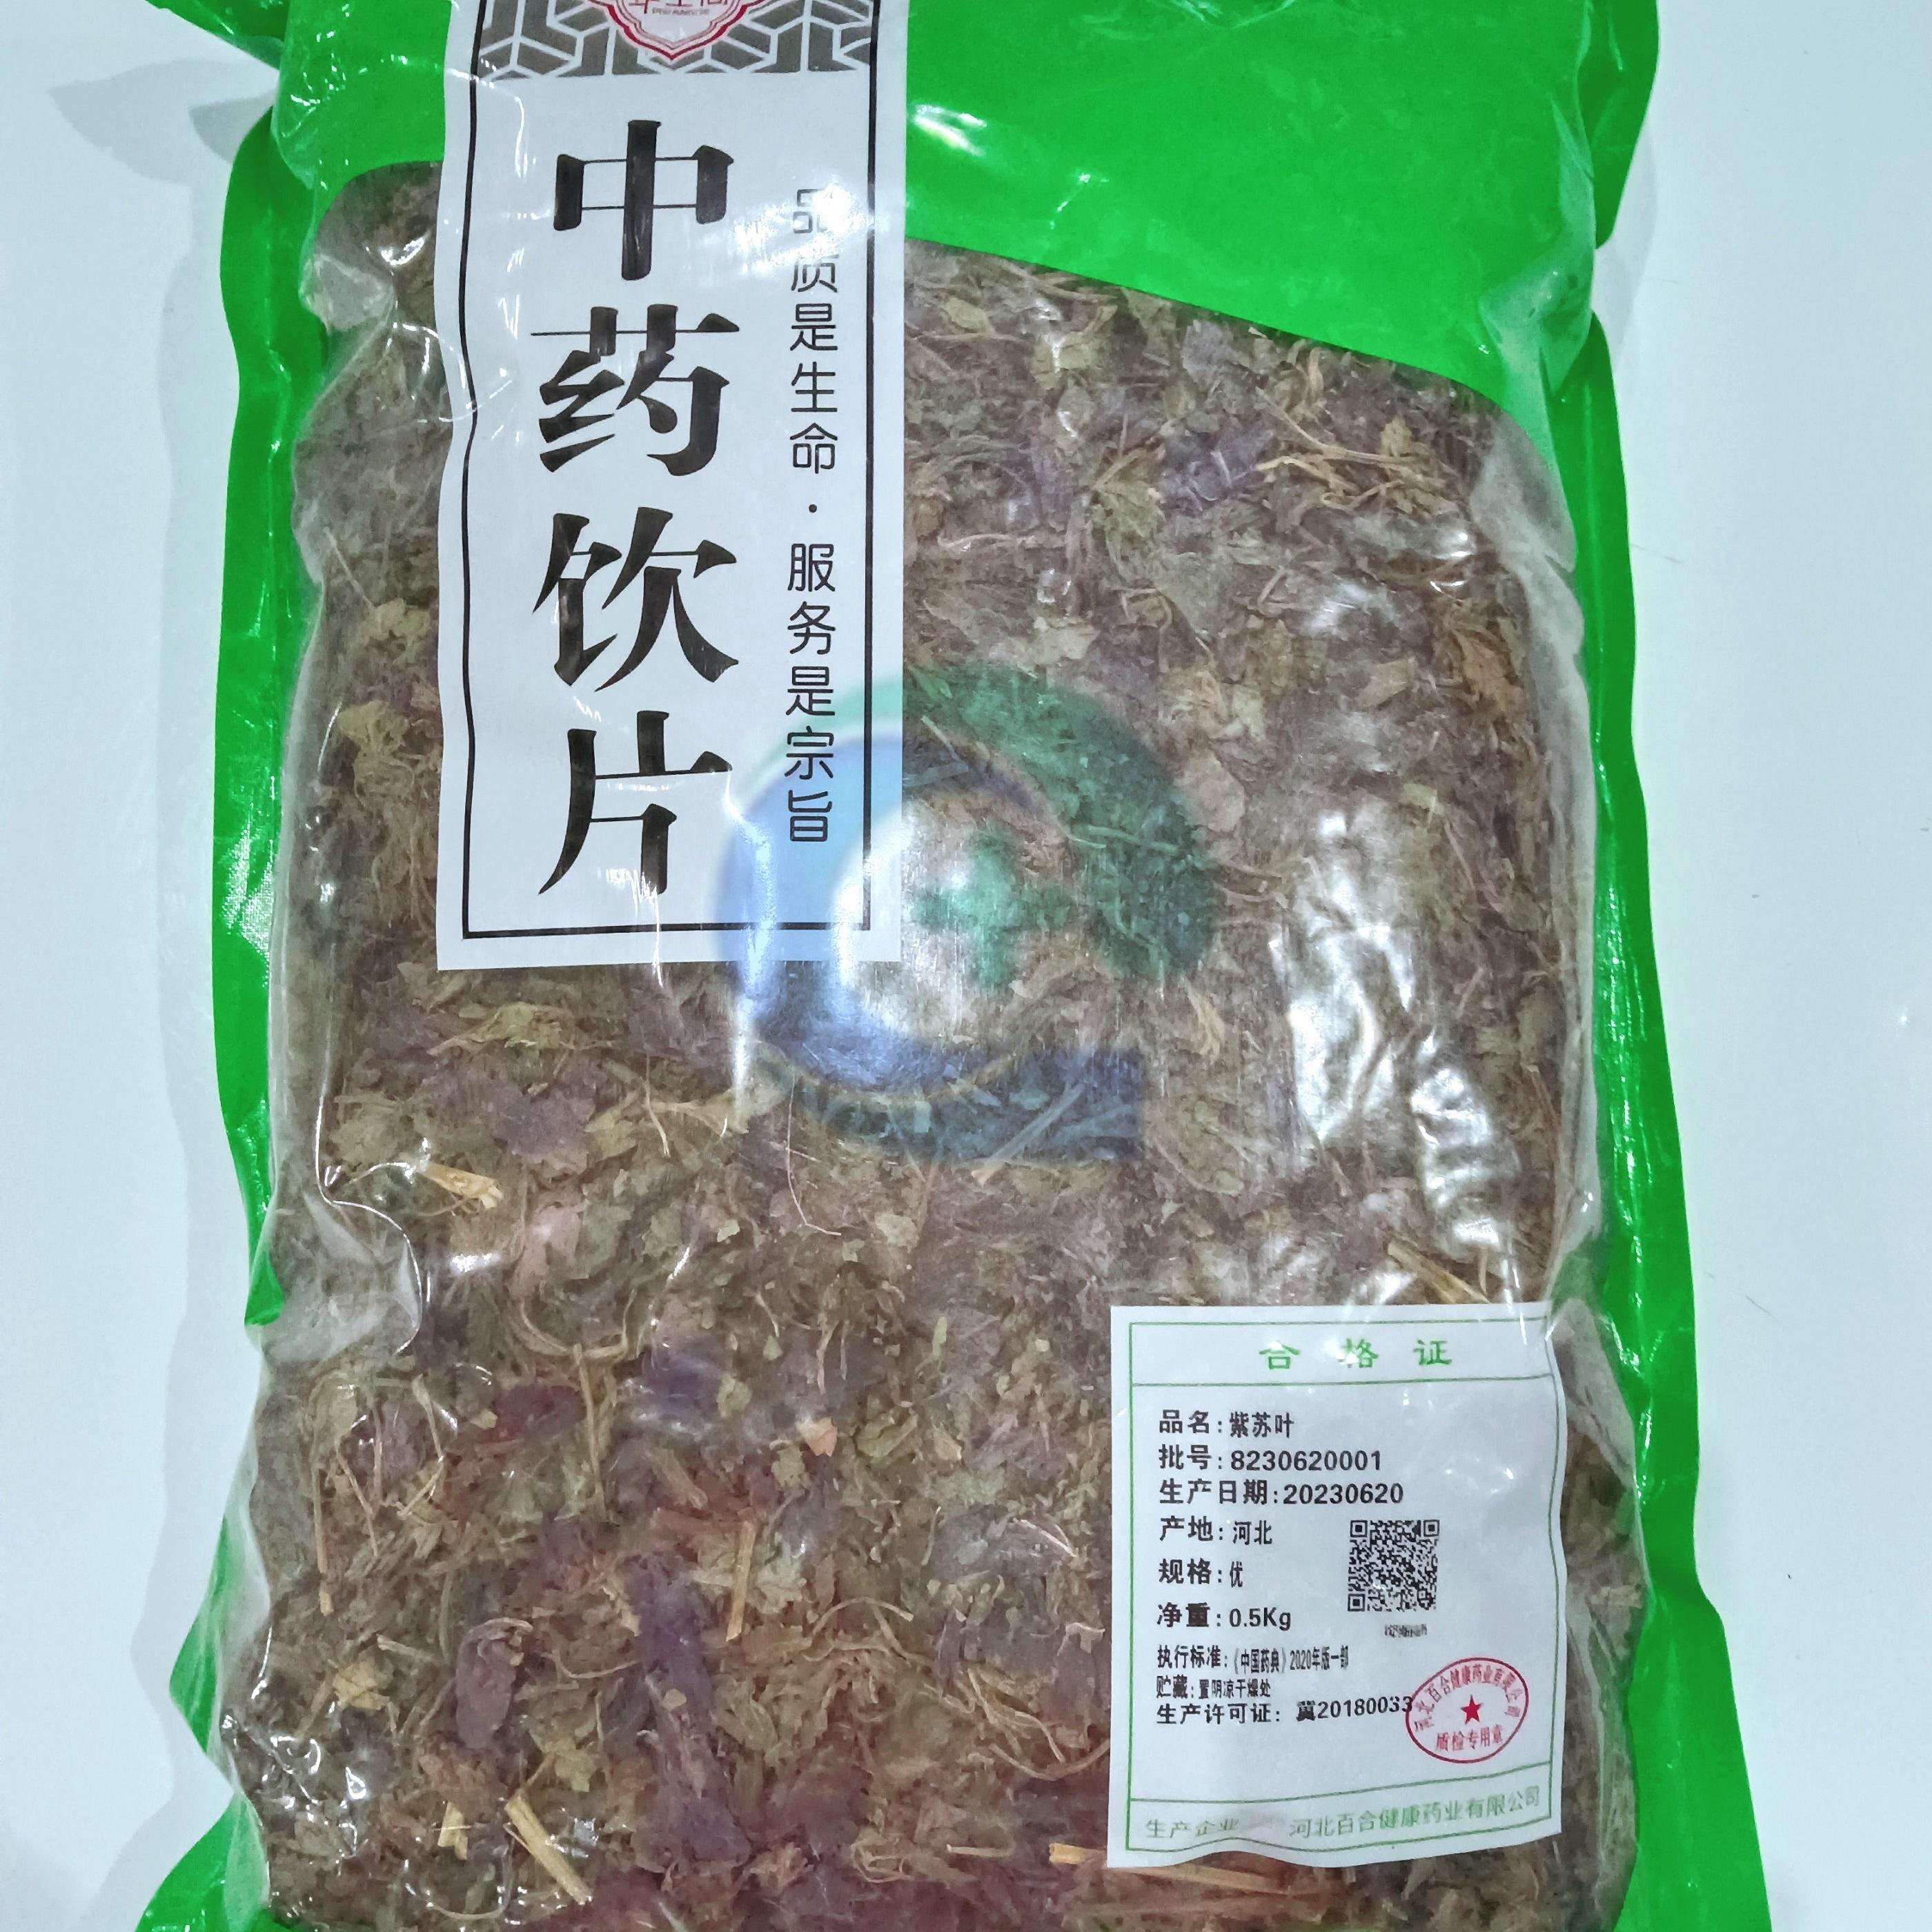 【】紫苏叶-优-0.5kg/袋-河北百合健康药业有限公司